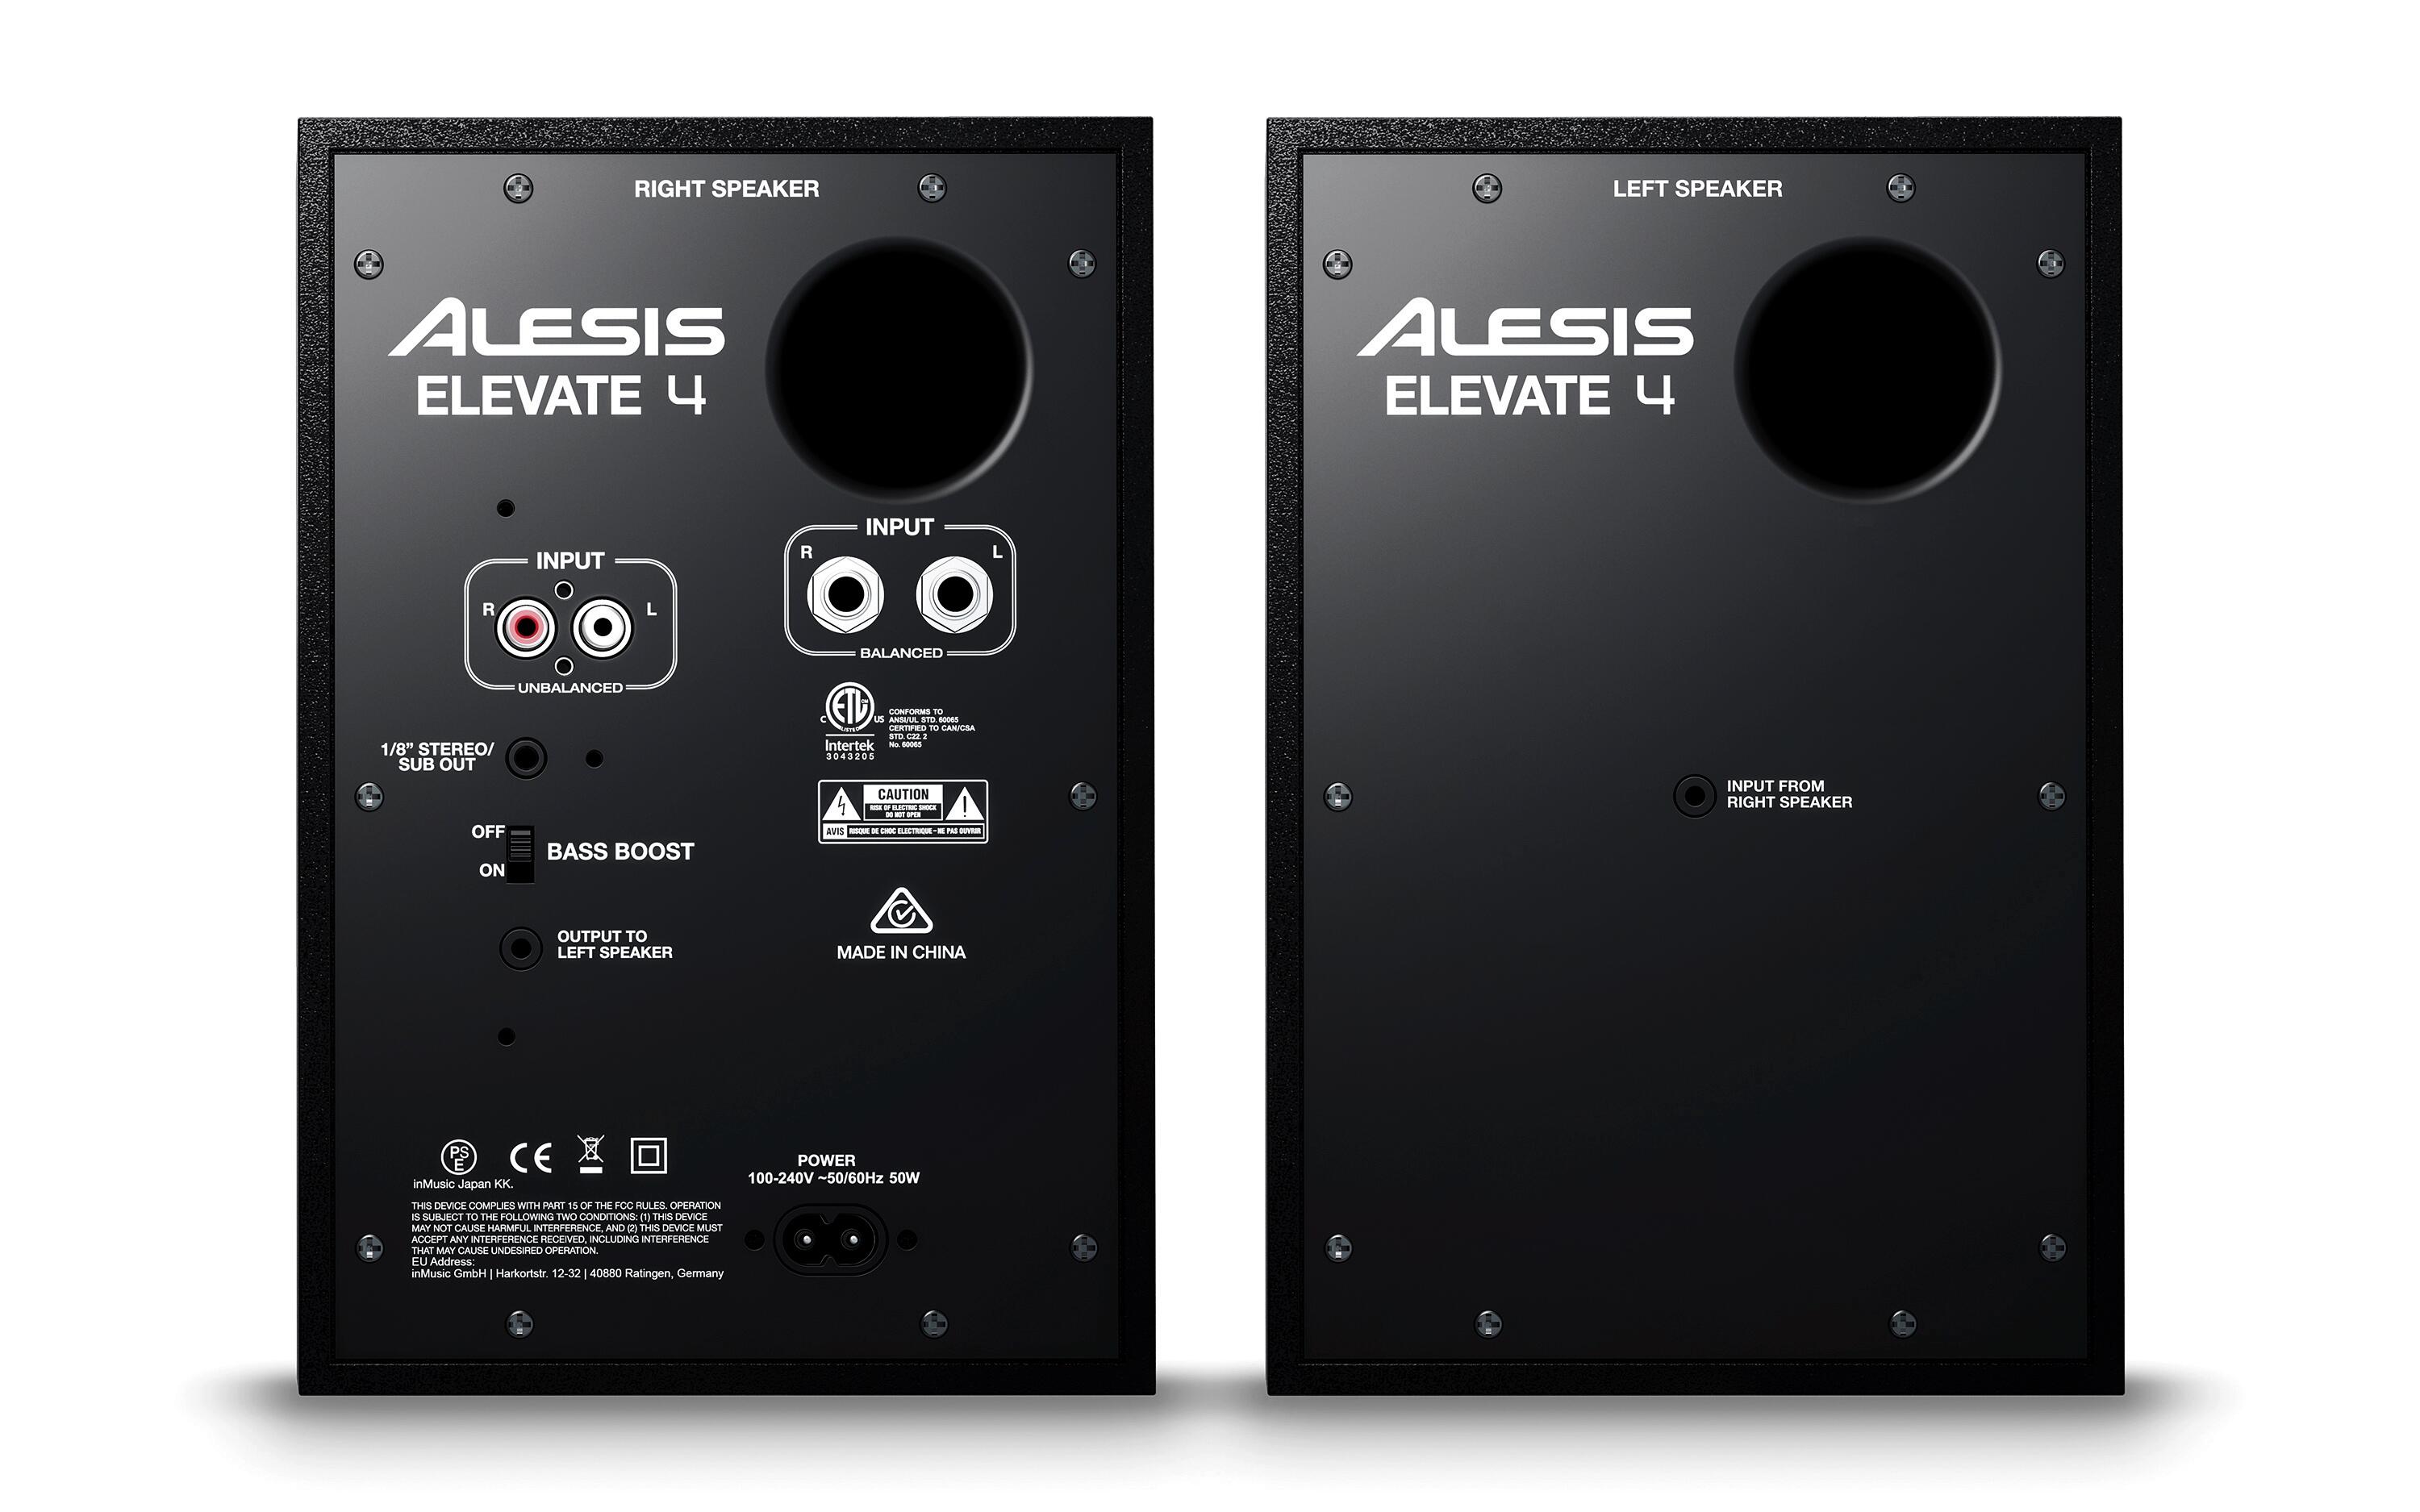 Alesis Elevate 4 speakers rear